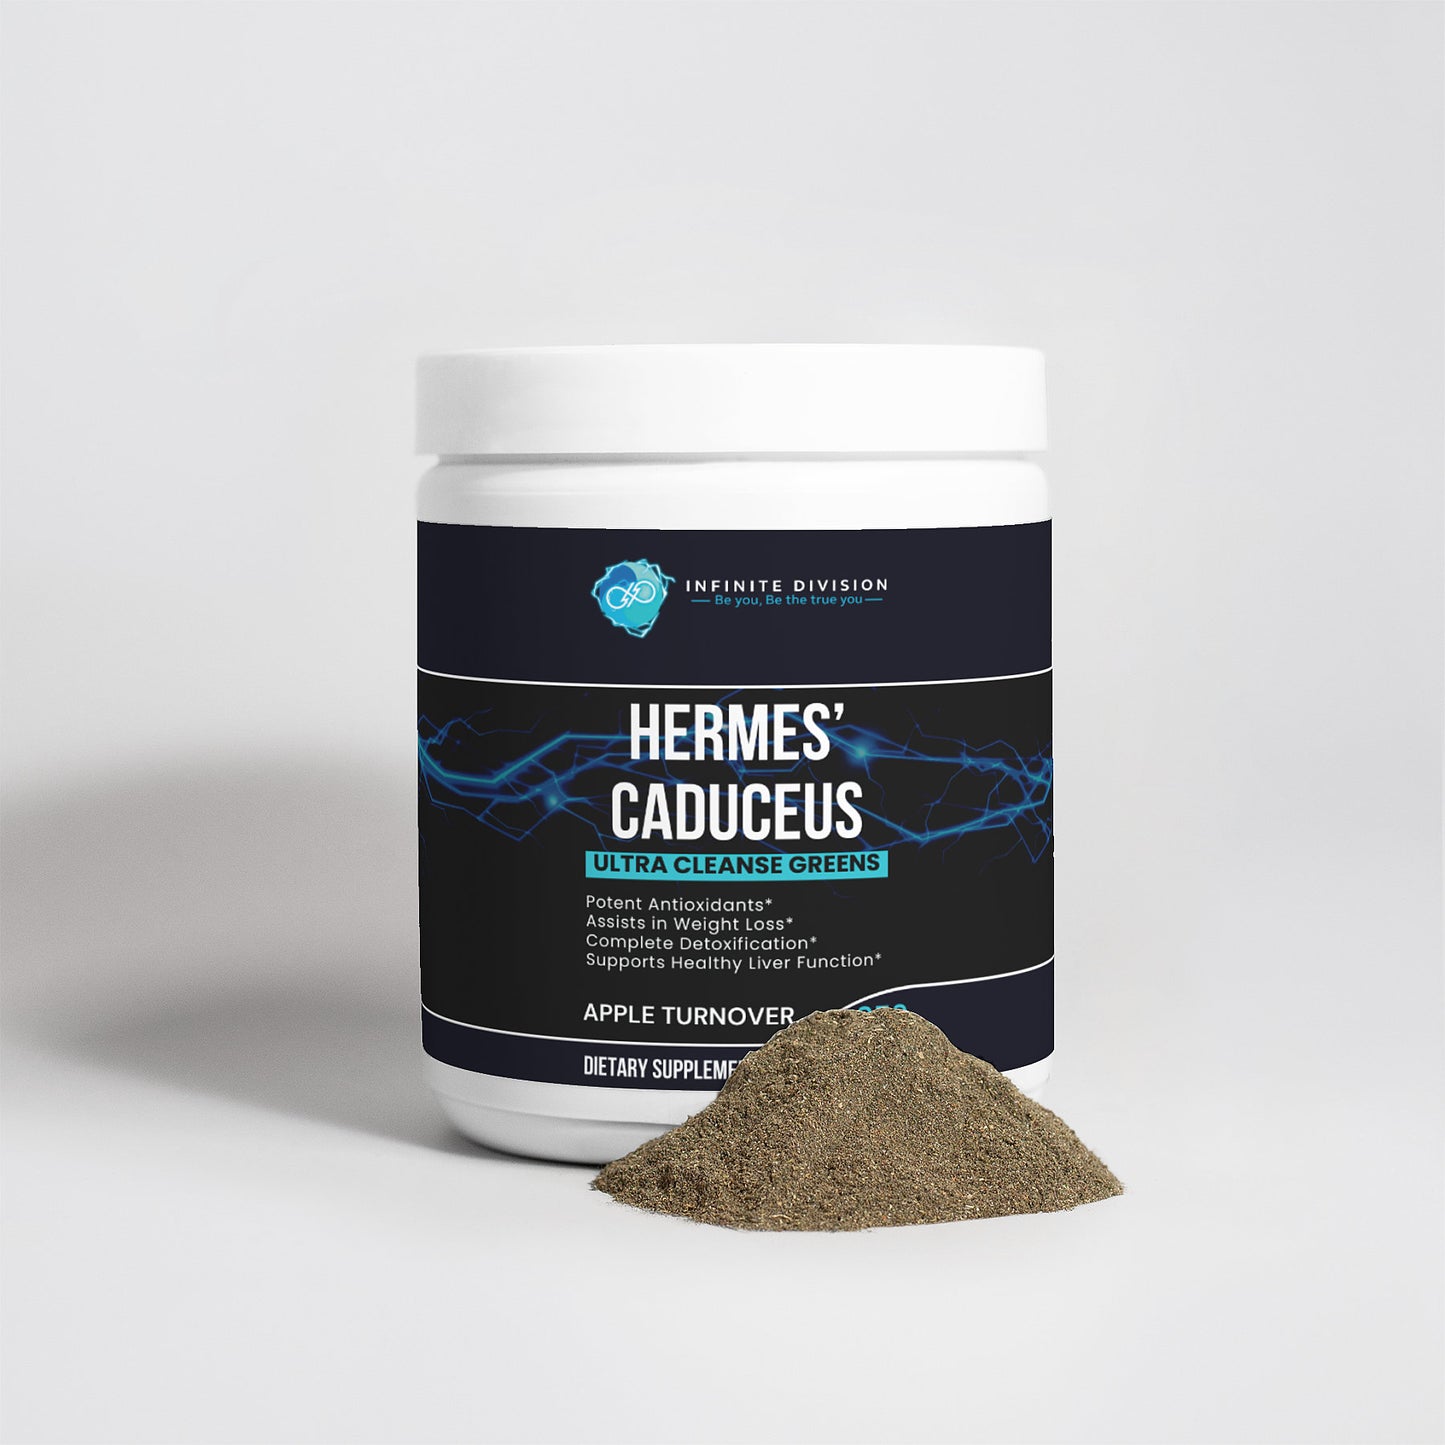 Hermes' Caduceus: Ultra Cleanse Greens